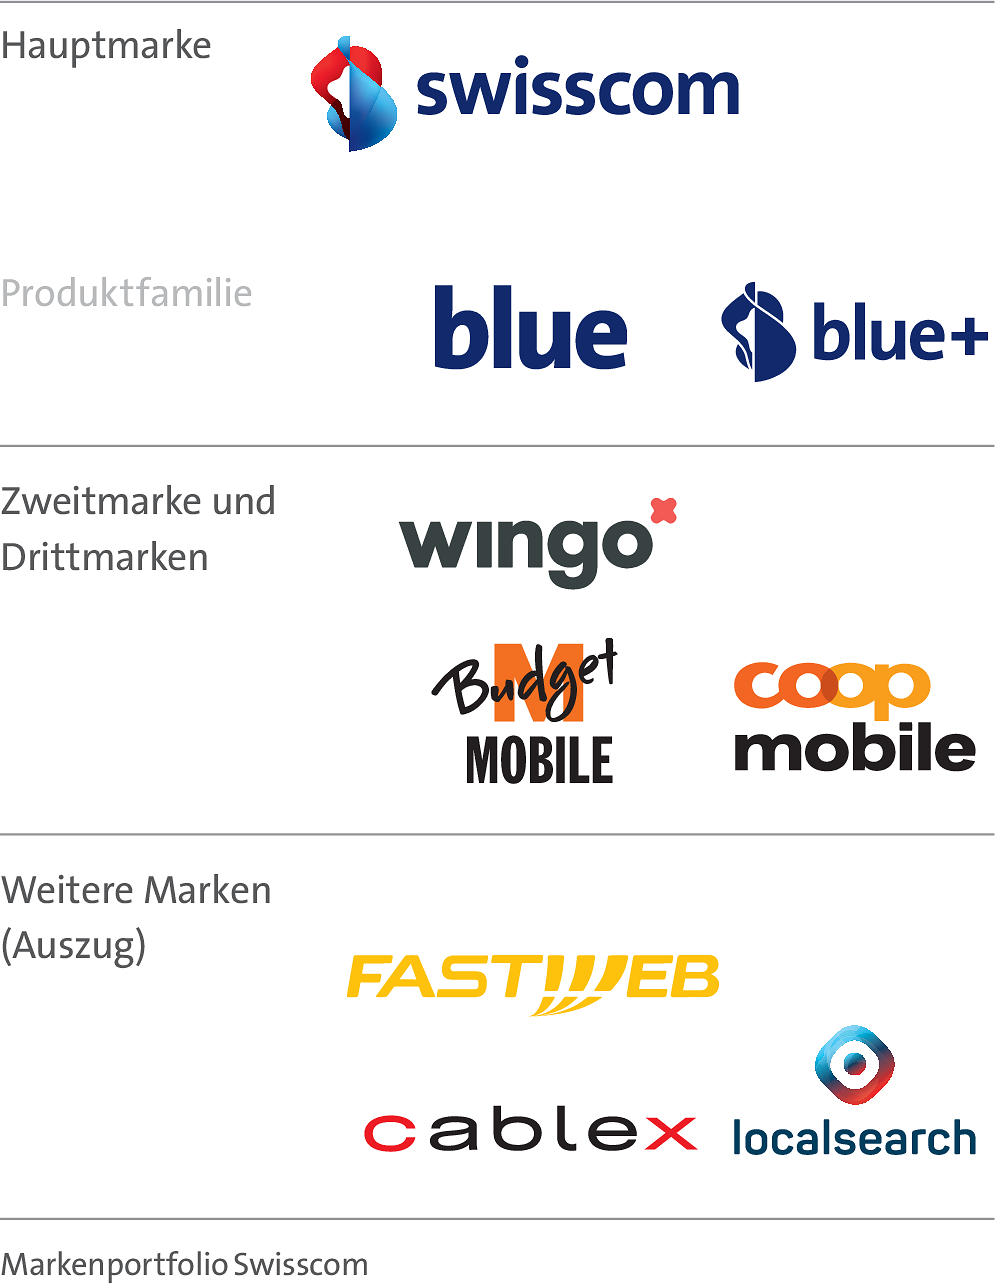 Die Grafik visualisiert das Markenportfolio mit der Hauptmarke Swisscom und deren Produktfamilie blue und blue+. Als Zweit- und Drittmarke sind Wingo, Budget Mobile und Coop Mobile dargestellt. Zur Kategorie weitere Marken gehören Fastweb, cablex und localsearch.